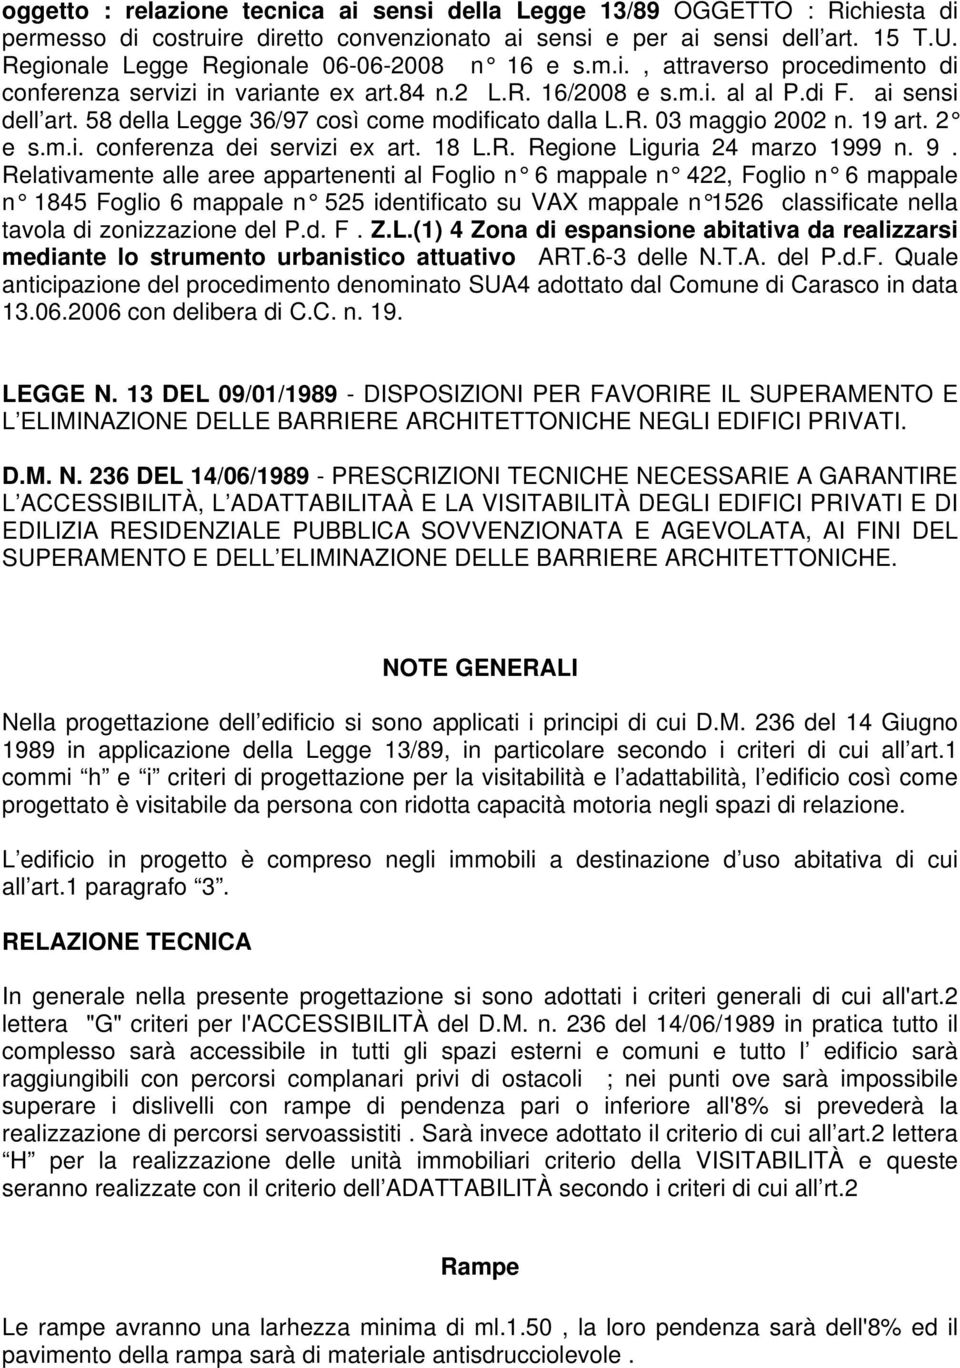 58 della Legge 36/97 così come modificato dalla L.R. 03 maggio 2002 n. 19 art. 2 e s.m.i. conferenza dei servizi ex art. 18 L.R. Regione Liguria 24 marzo 1999 n. 9.